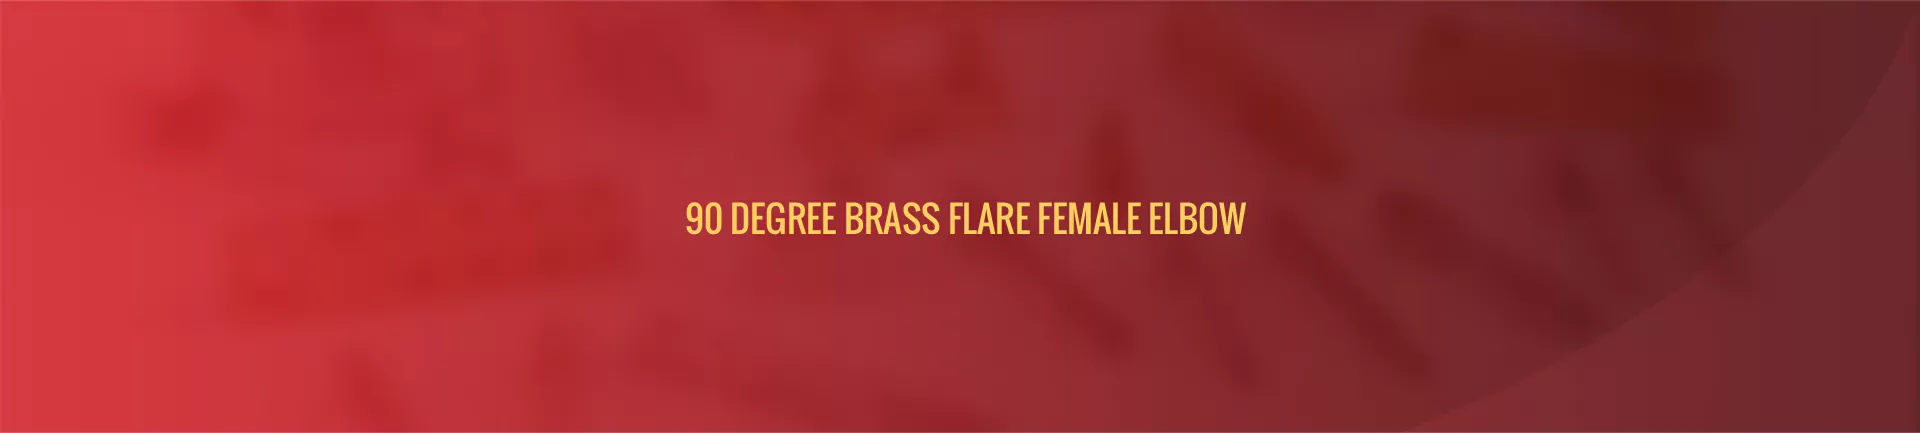 90-degree_brass_flare_female_elbow-banner